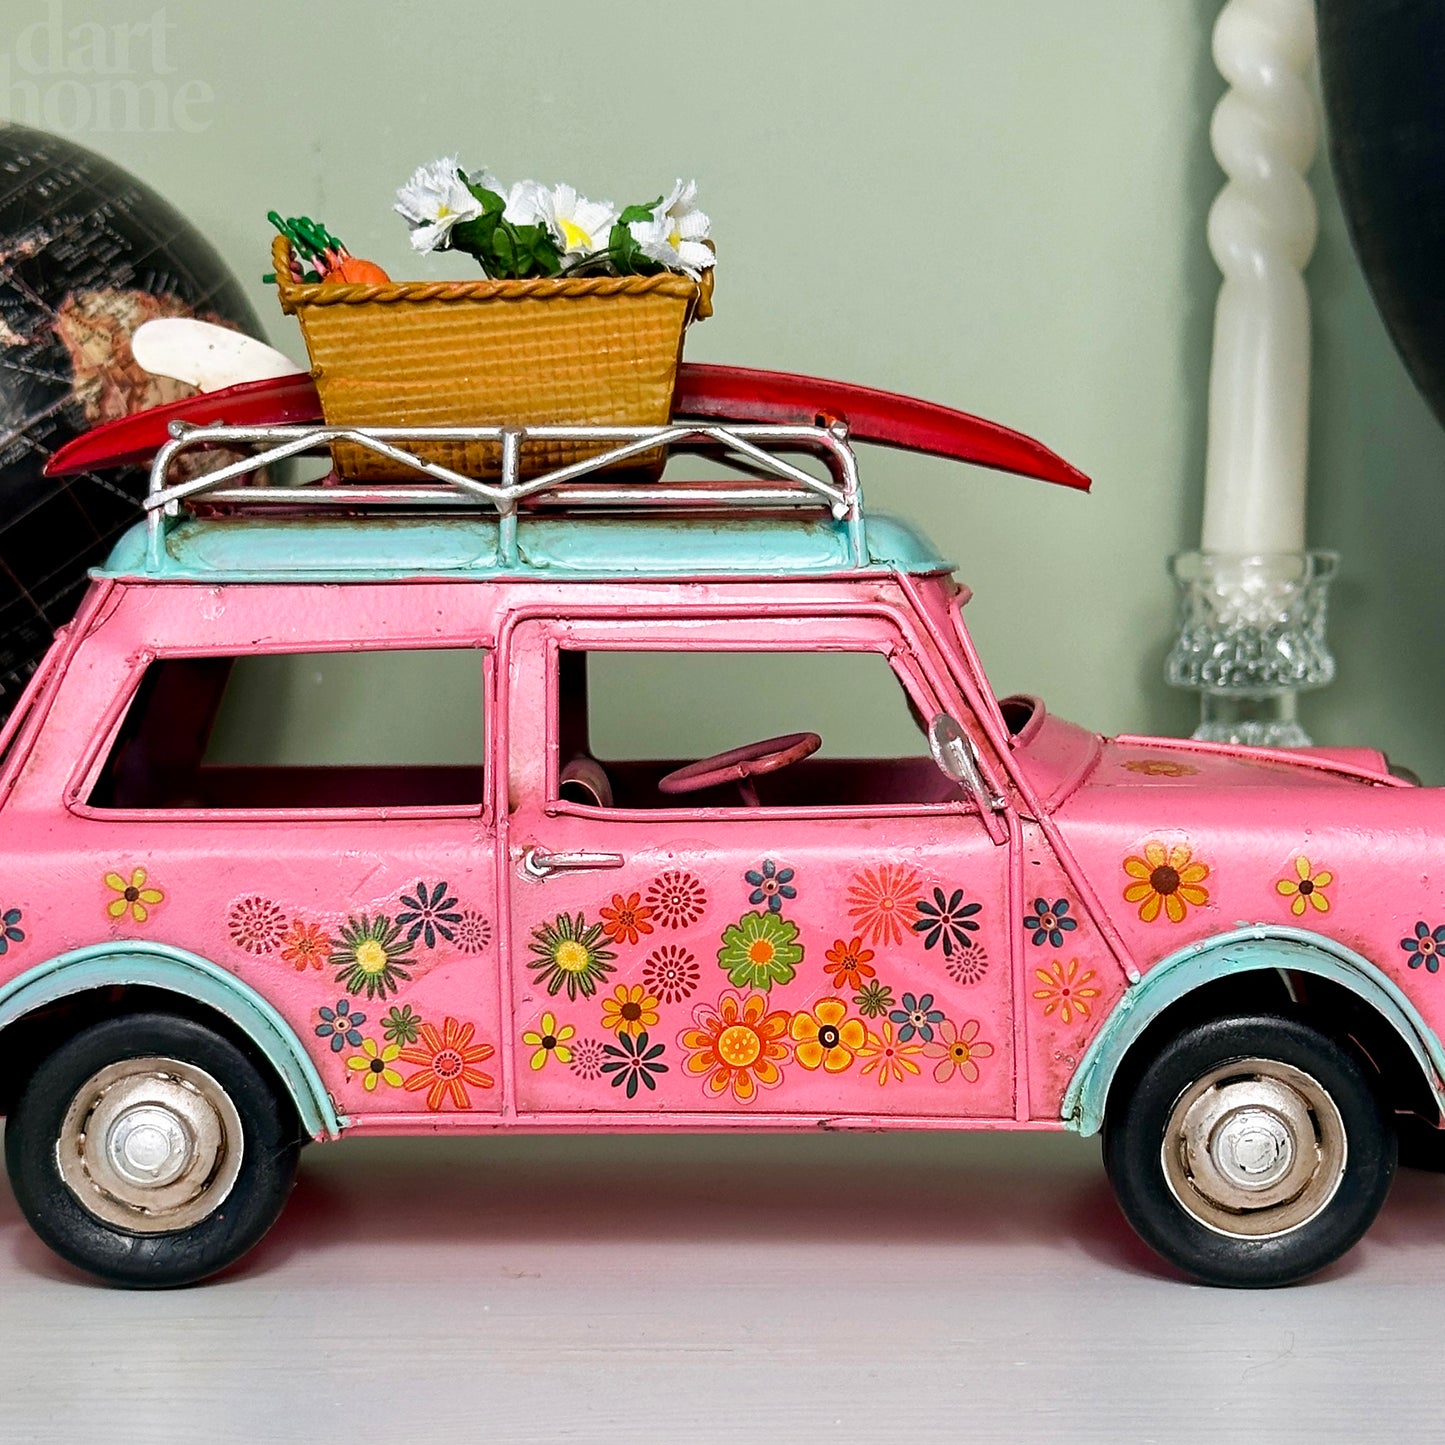 Vintage Pink Floral Car Ornament